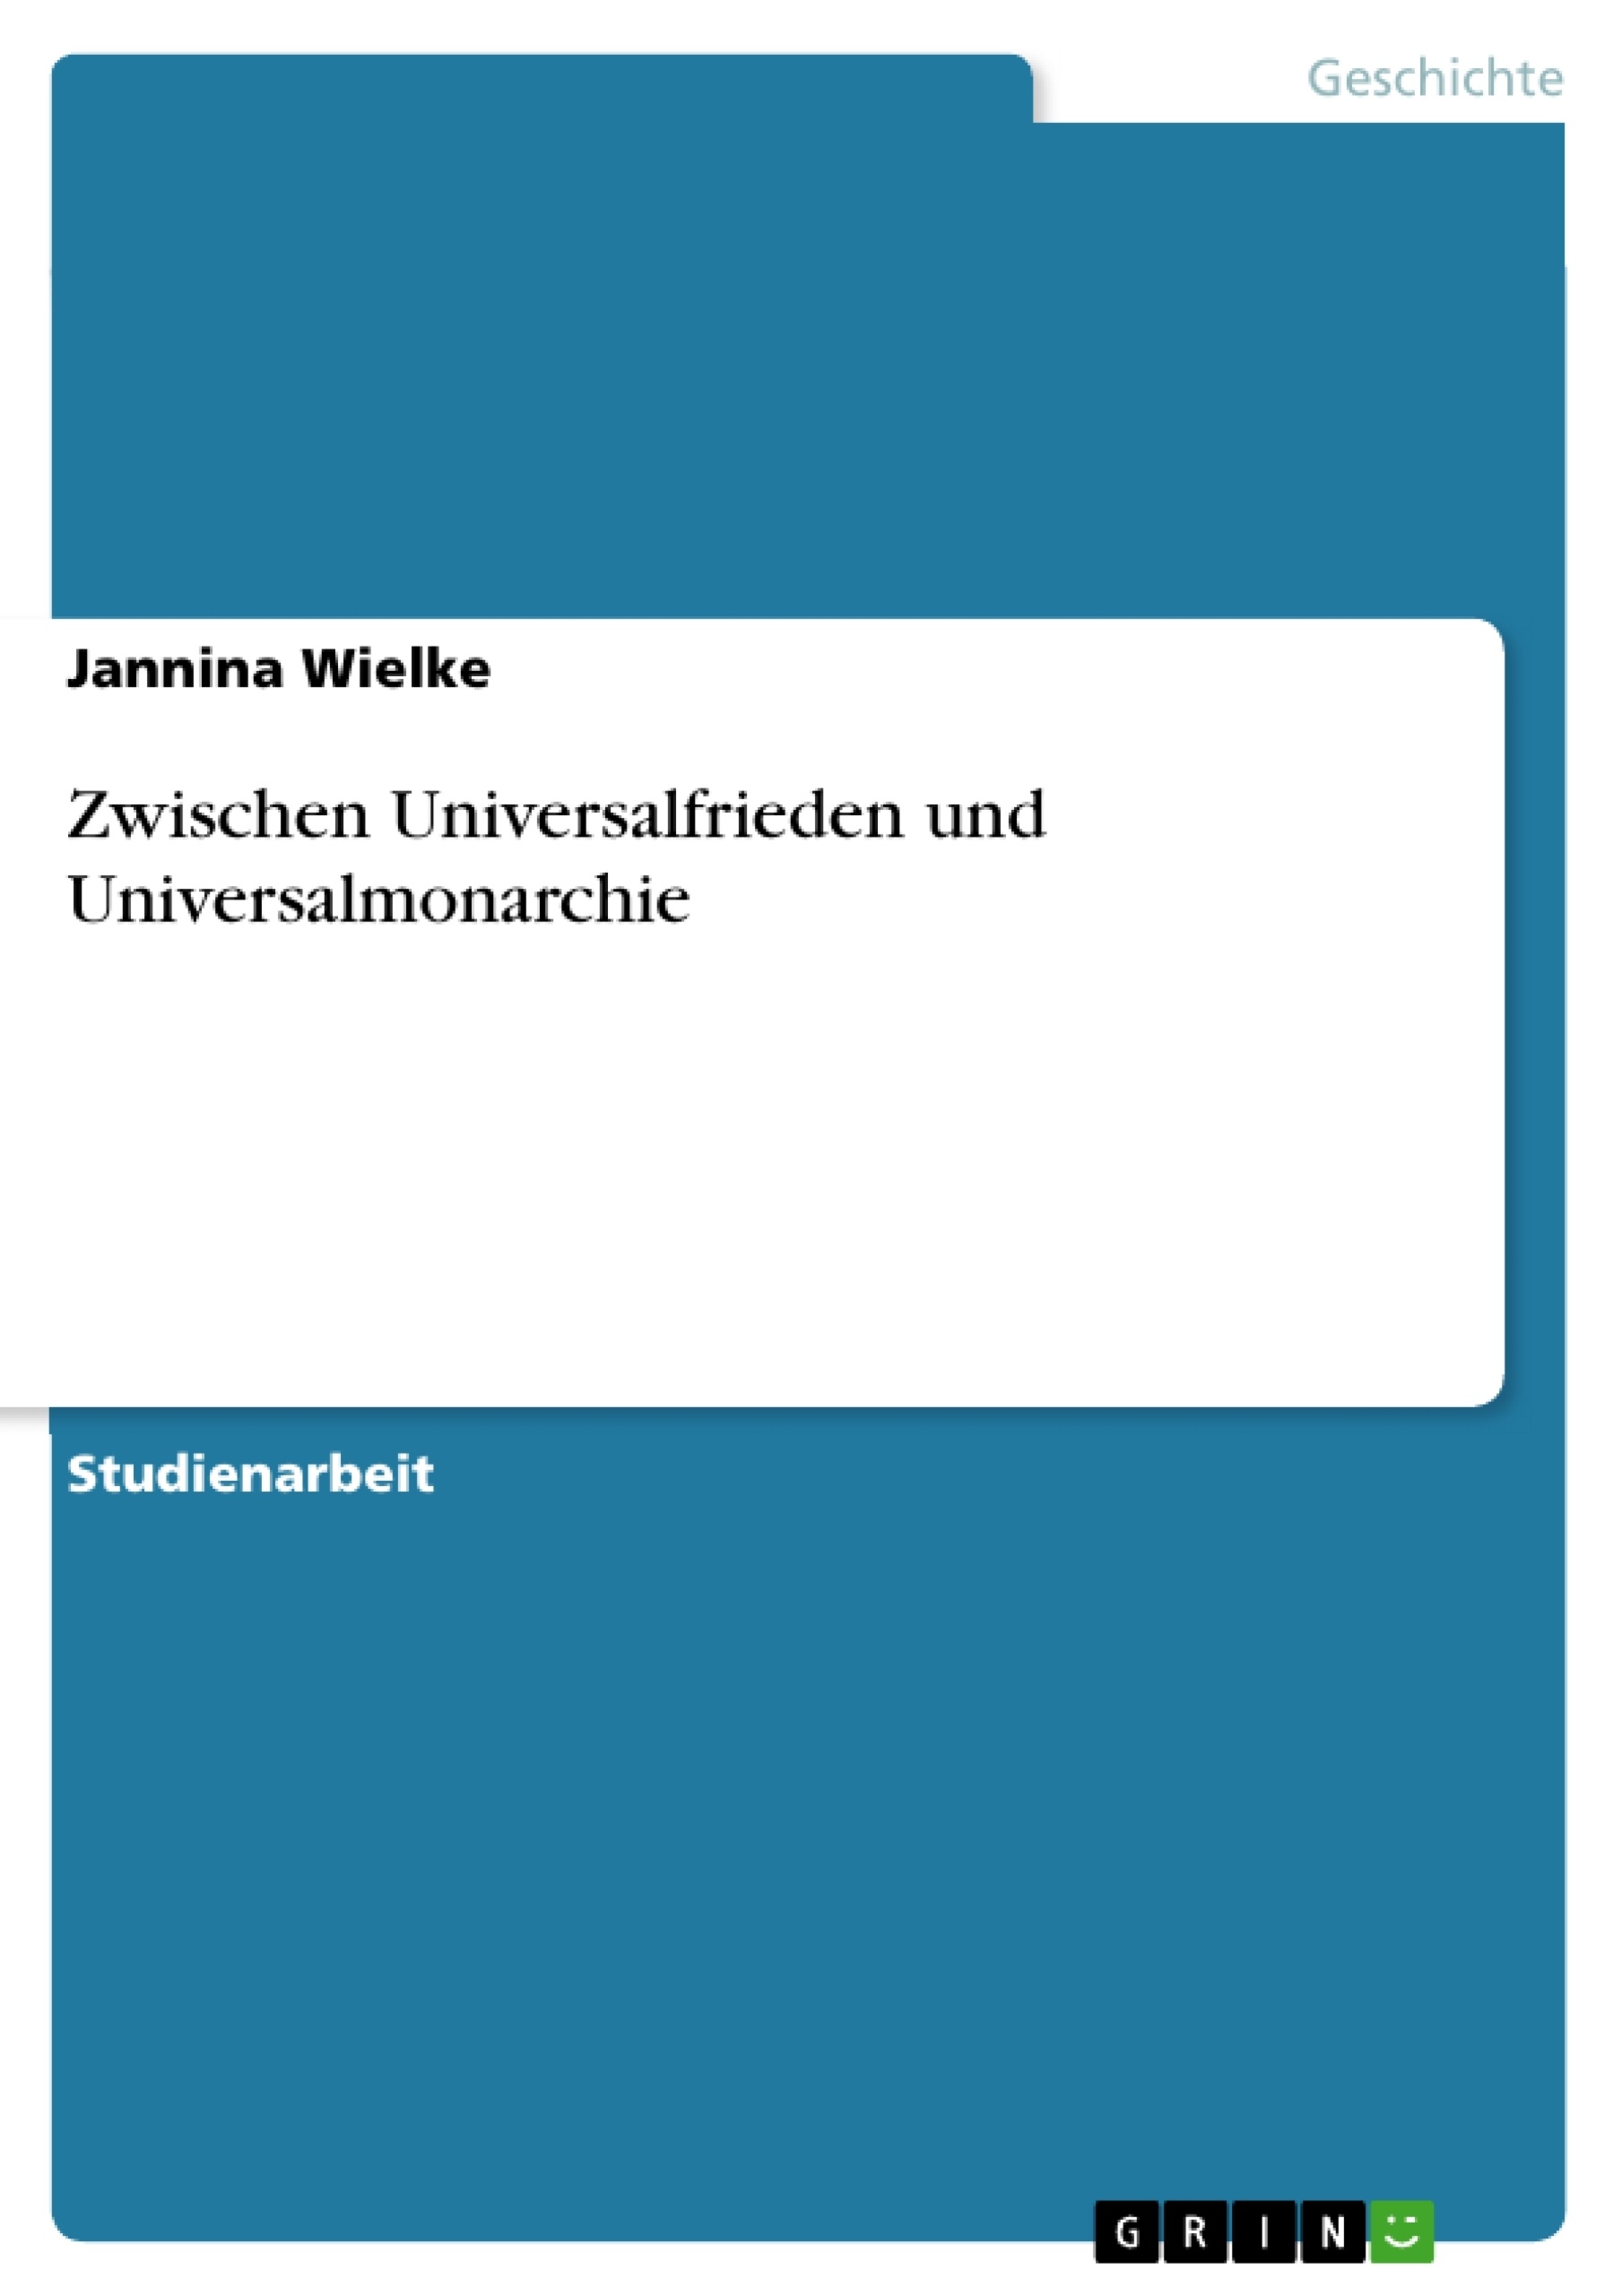 Titre: Zwischen Universalfrieden und Universalmonarchie